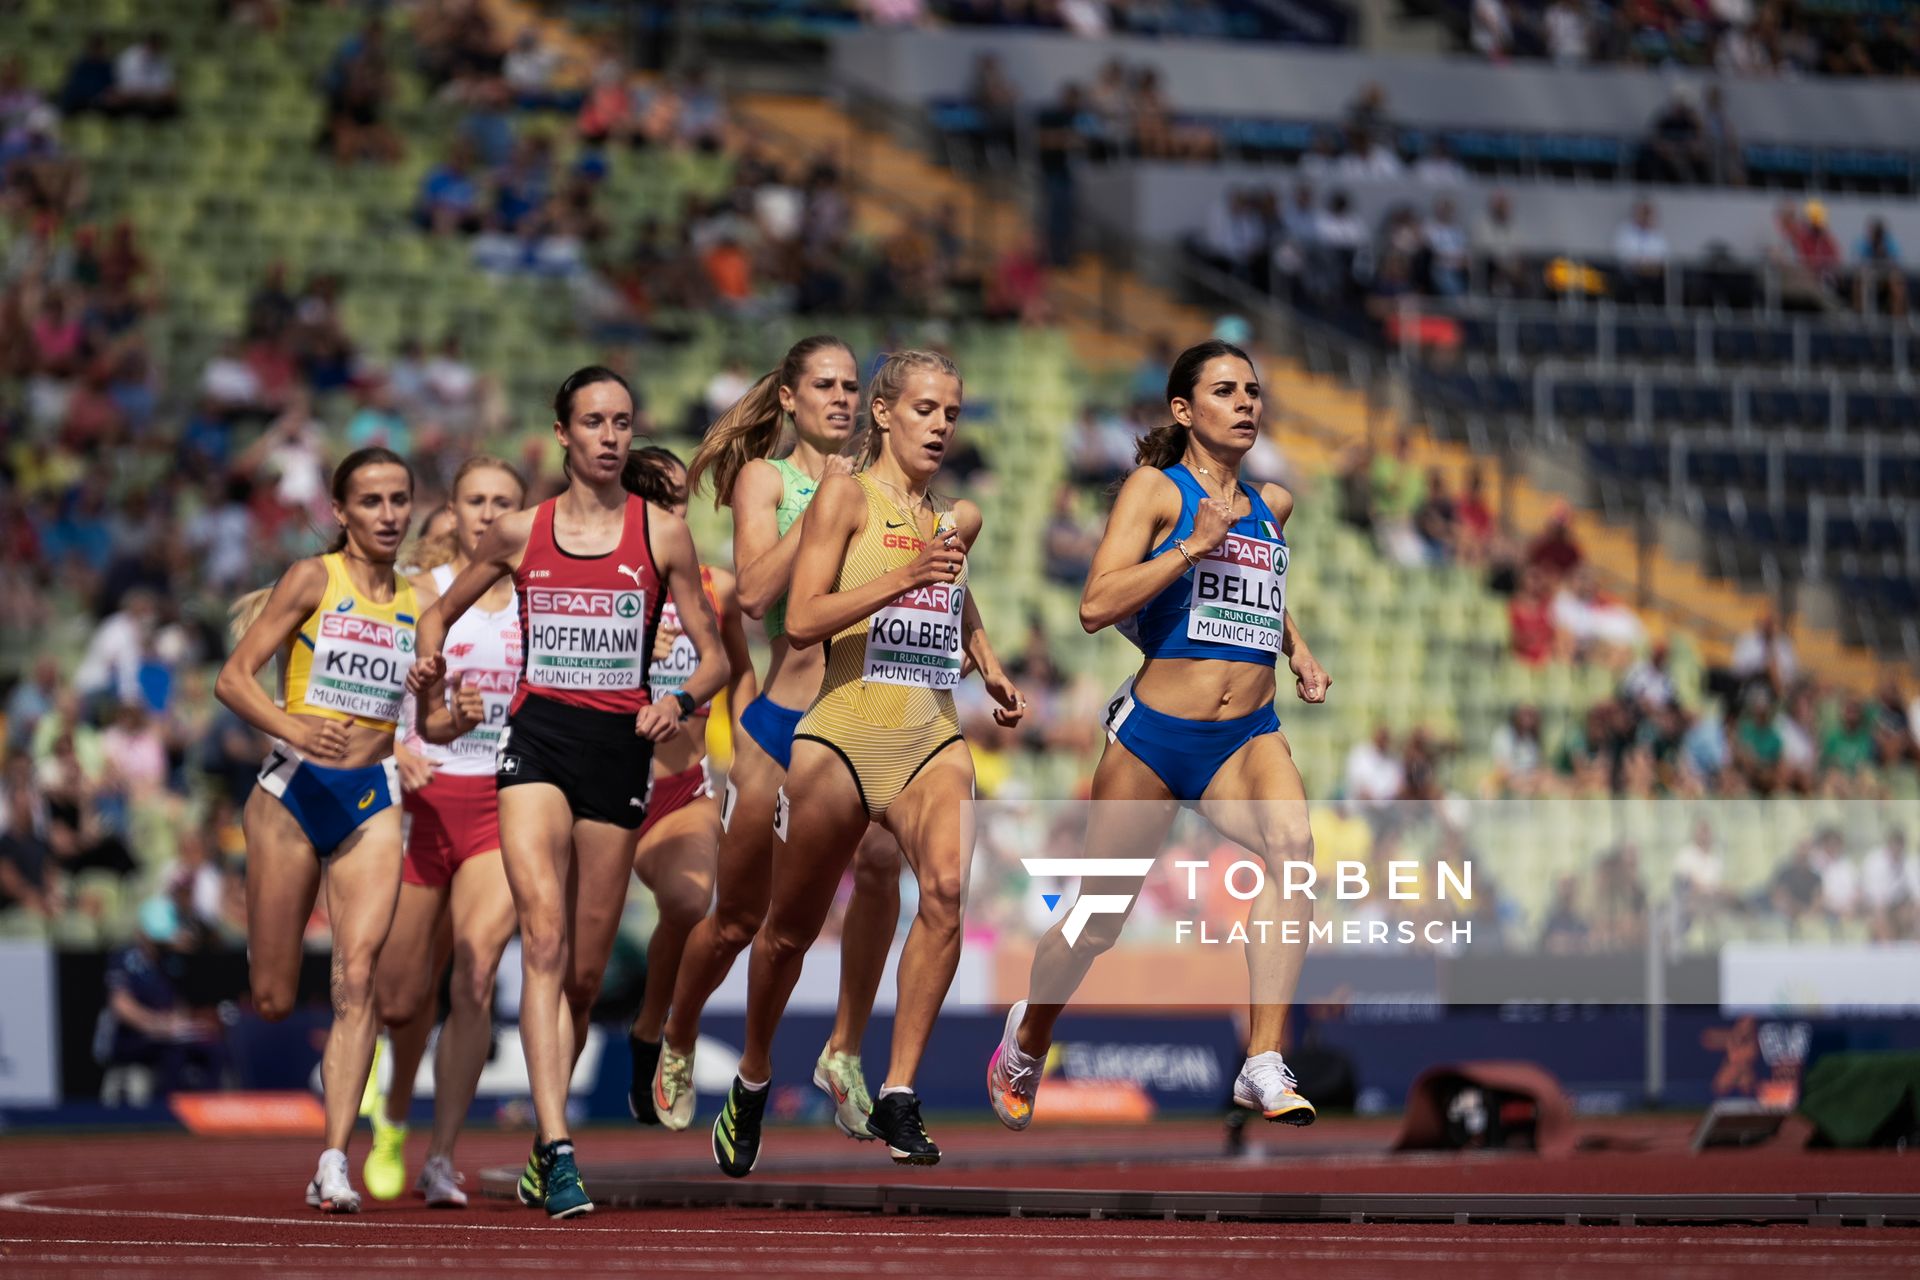 Majtie Kolberg (GER), Lore Hoffmann (SUI), Natalіia Krol (UKR), Elena Bello (ITA) im 800m Vorlauf am 18.08.2022 bei den Leichtathletik-Europameisterschaften in Muenchen